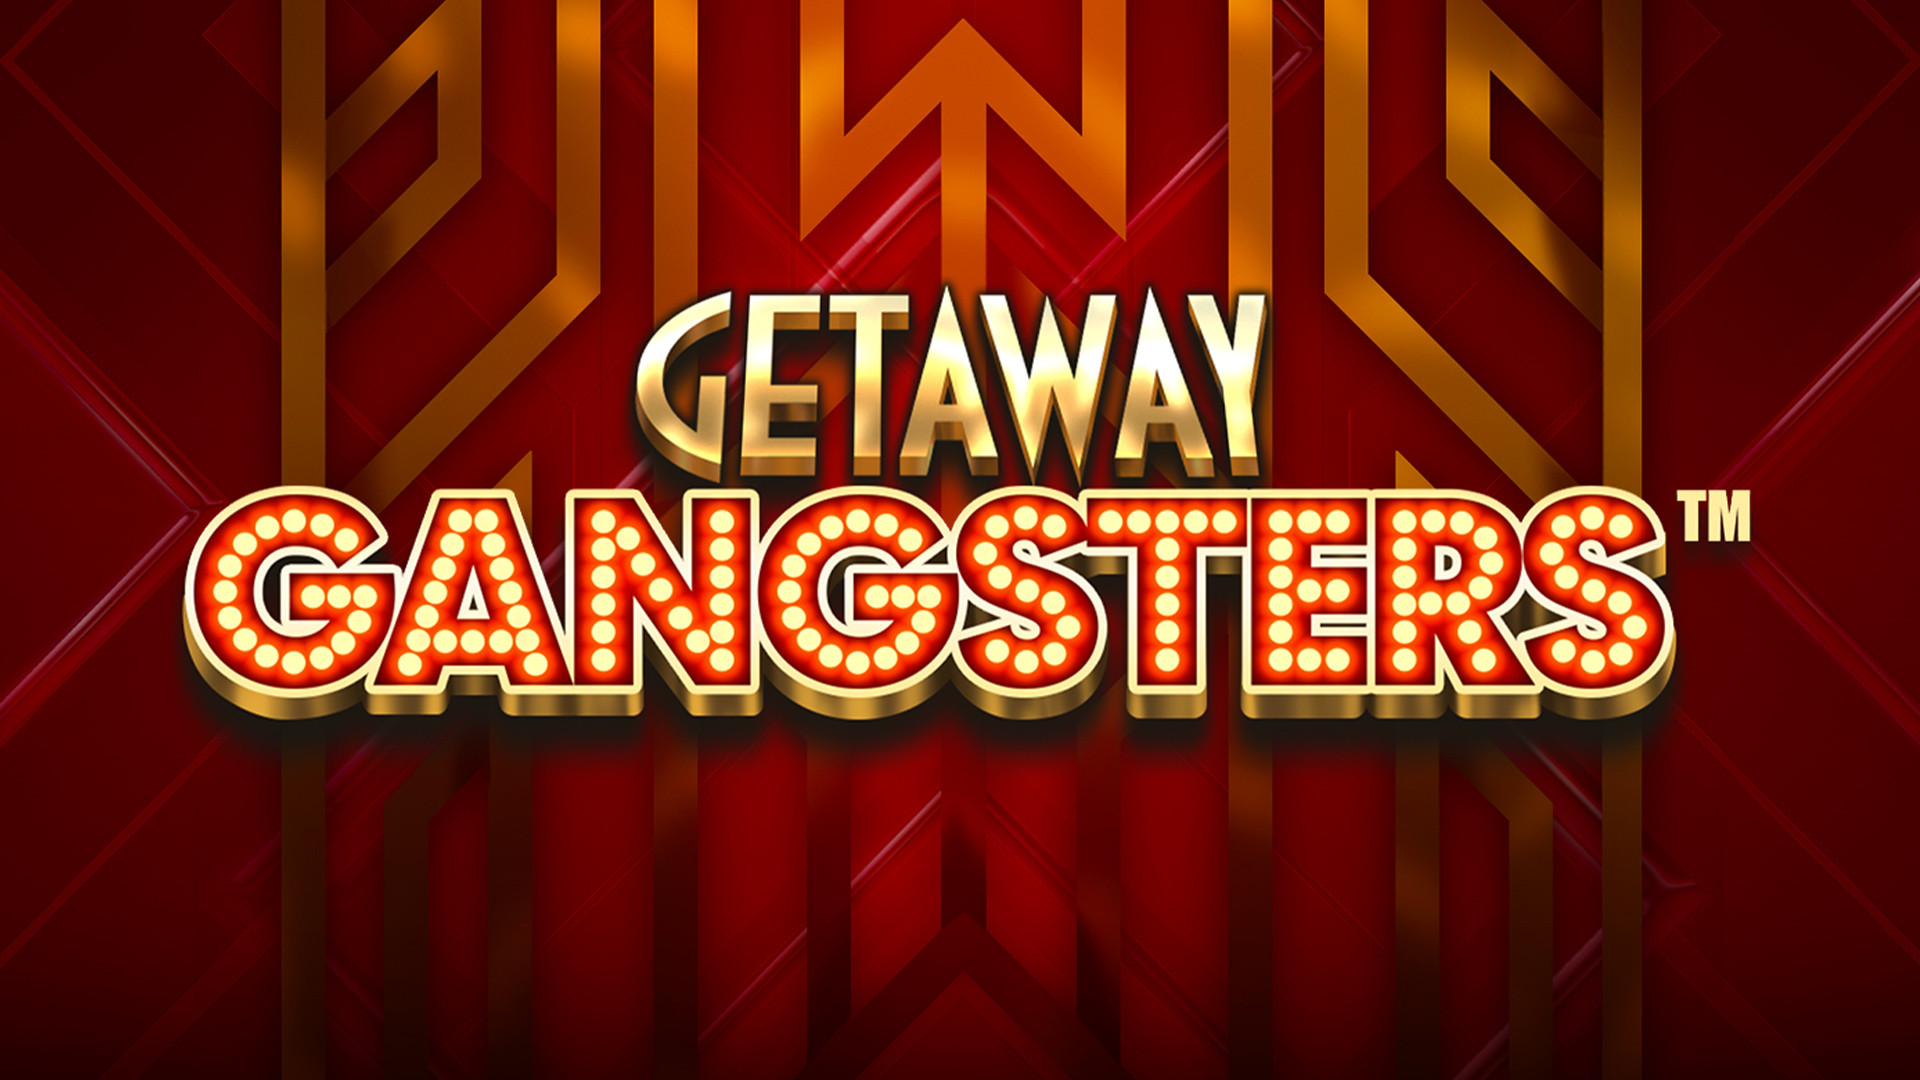 Getaway Gangsters